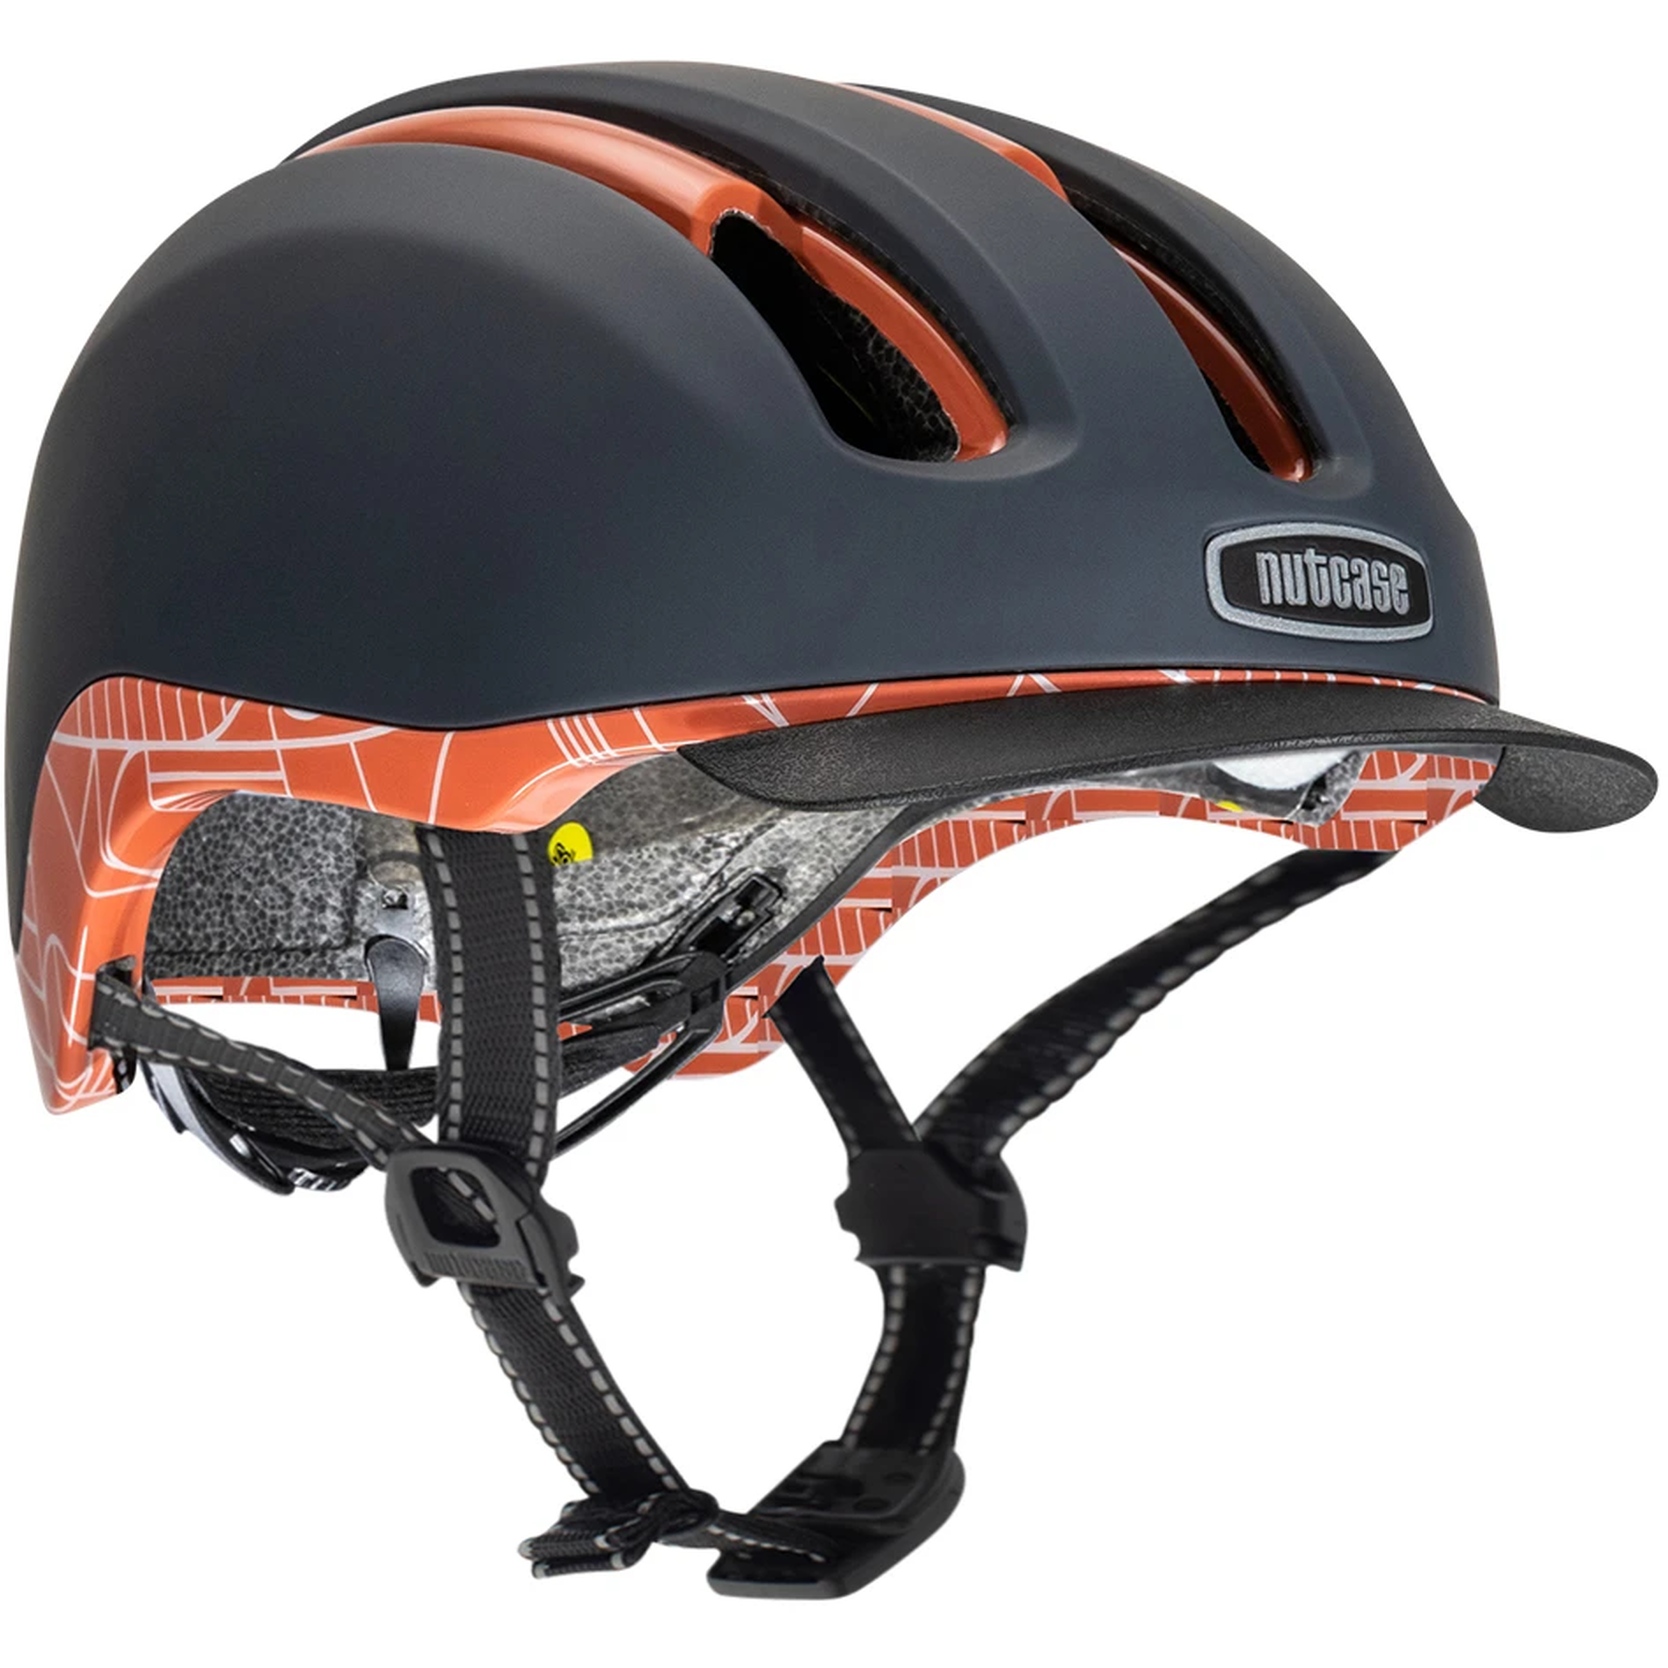 Productfoto van Nutcase Vio Adventure MIPS Helmet - Bahous Red